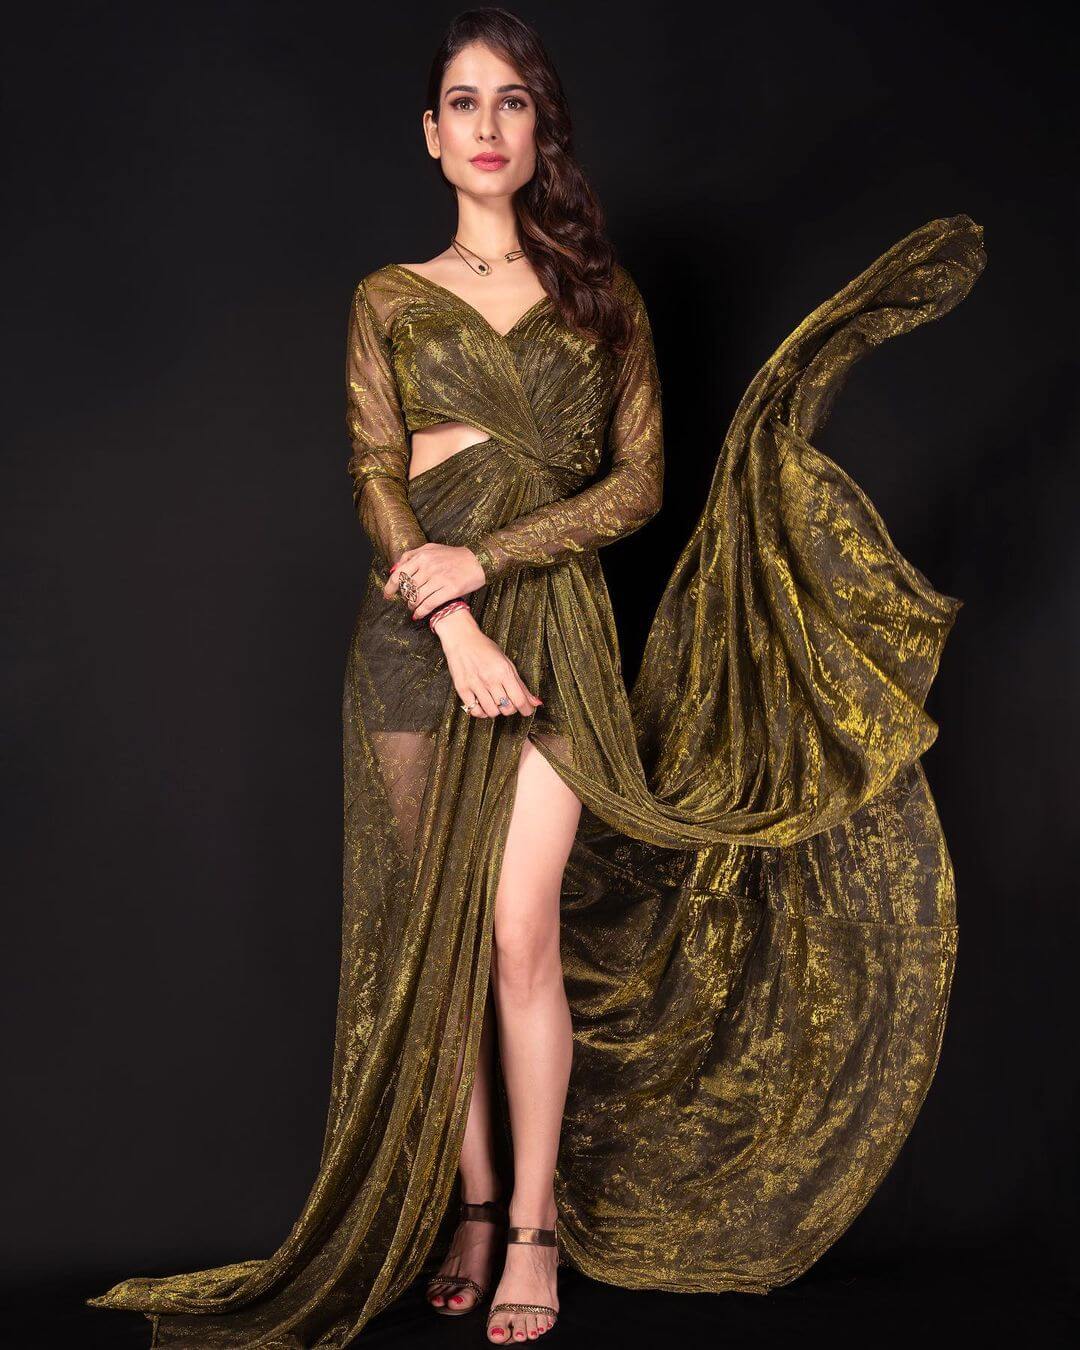 Aneri Vajani Looks Sensual In Sheer Golden See-Through Dress